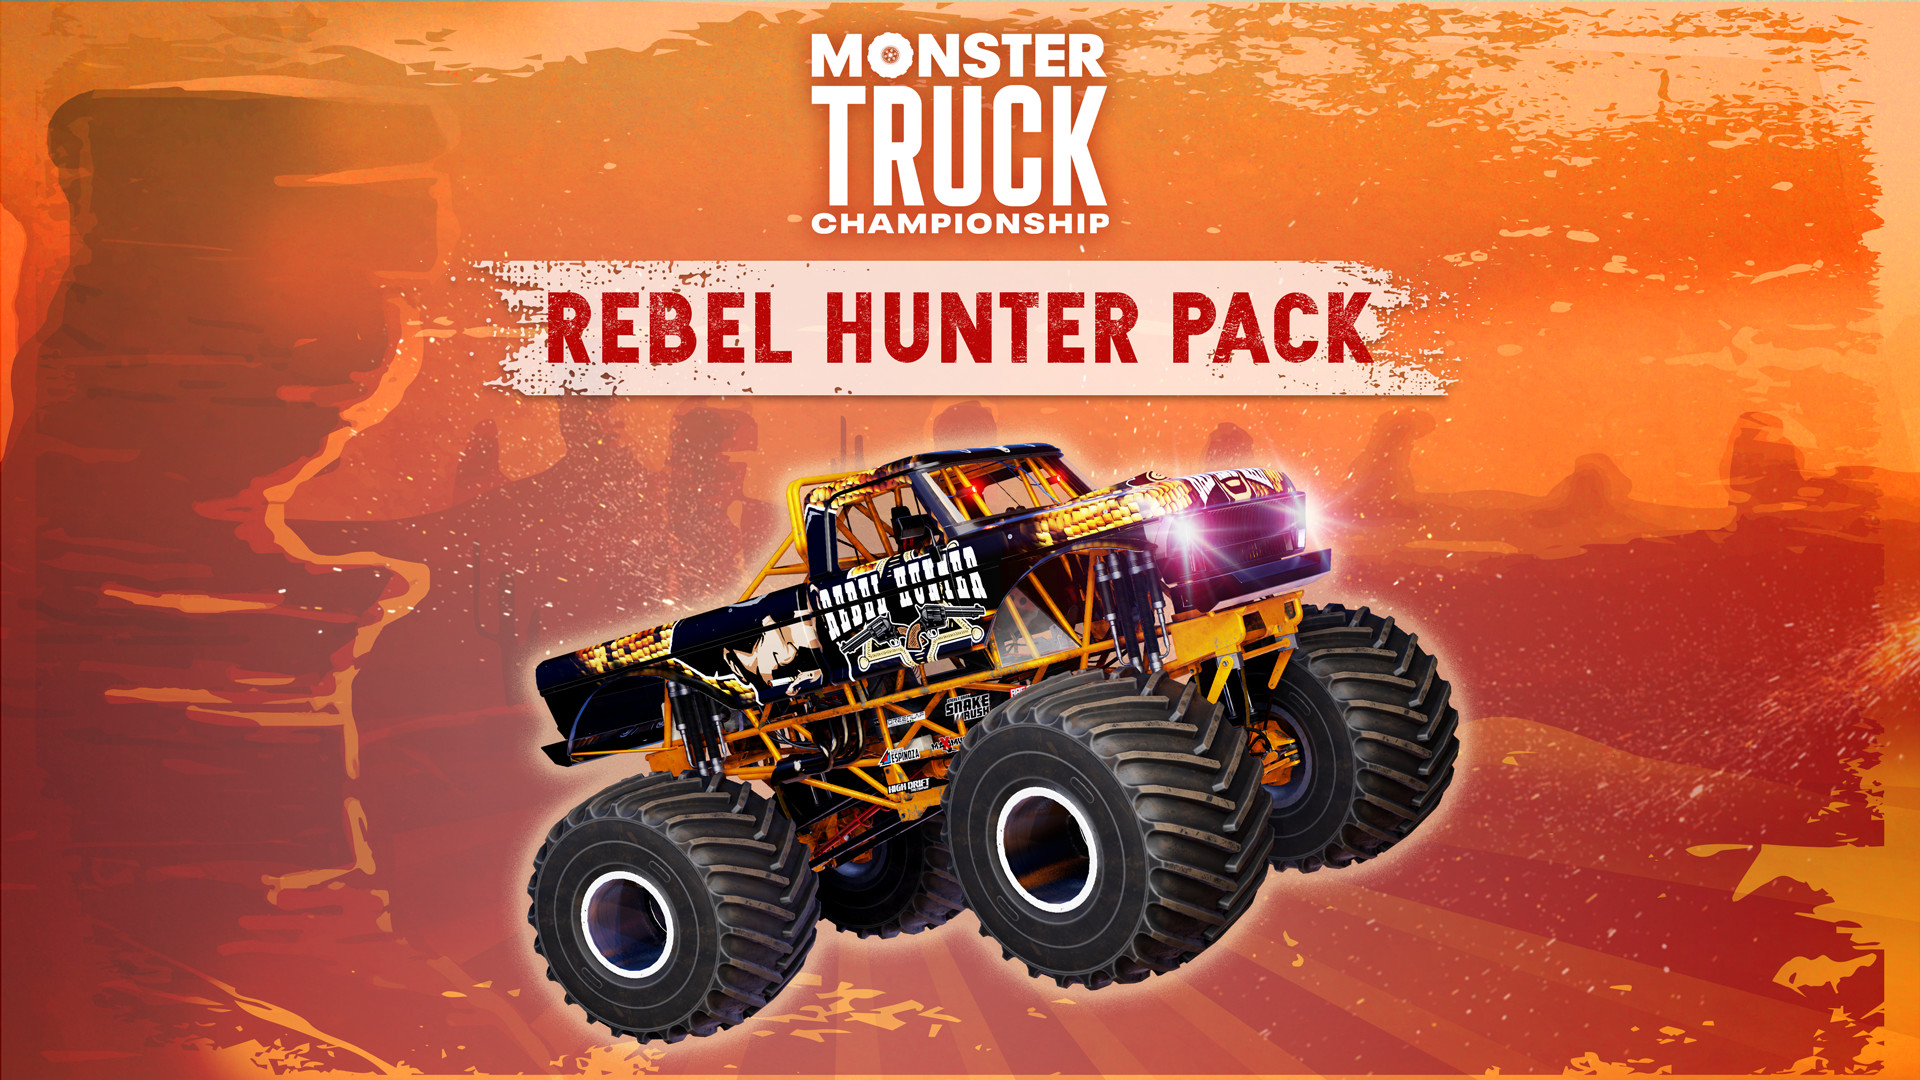 (10.16$) Monster Truck Championship - Rebel Hunter Pack DLC Steam CD Key